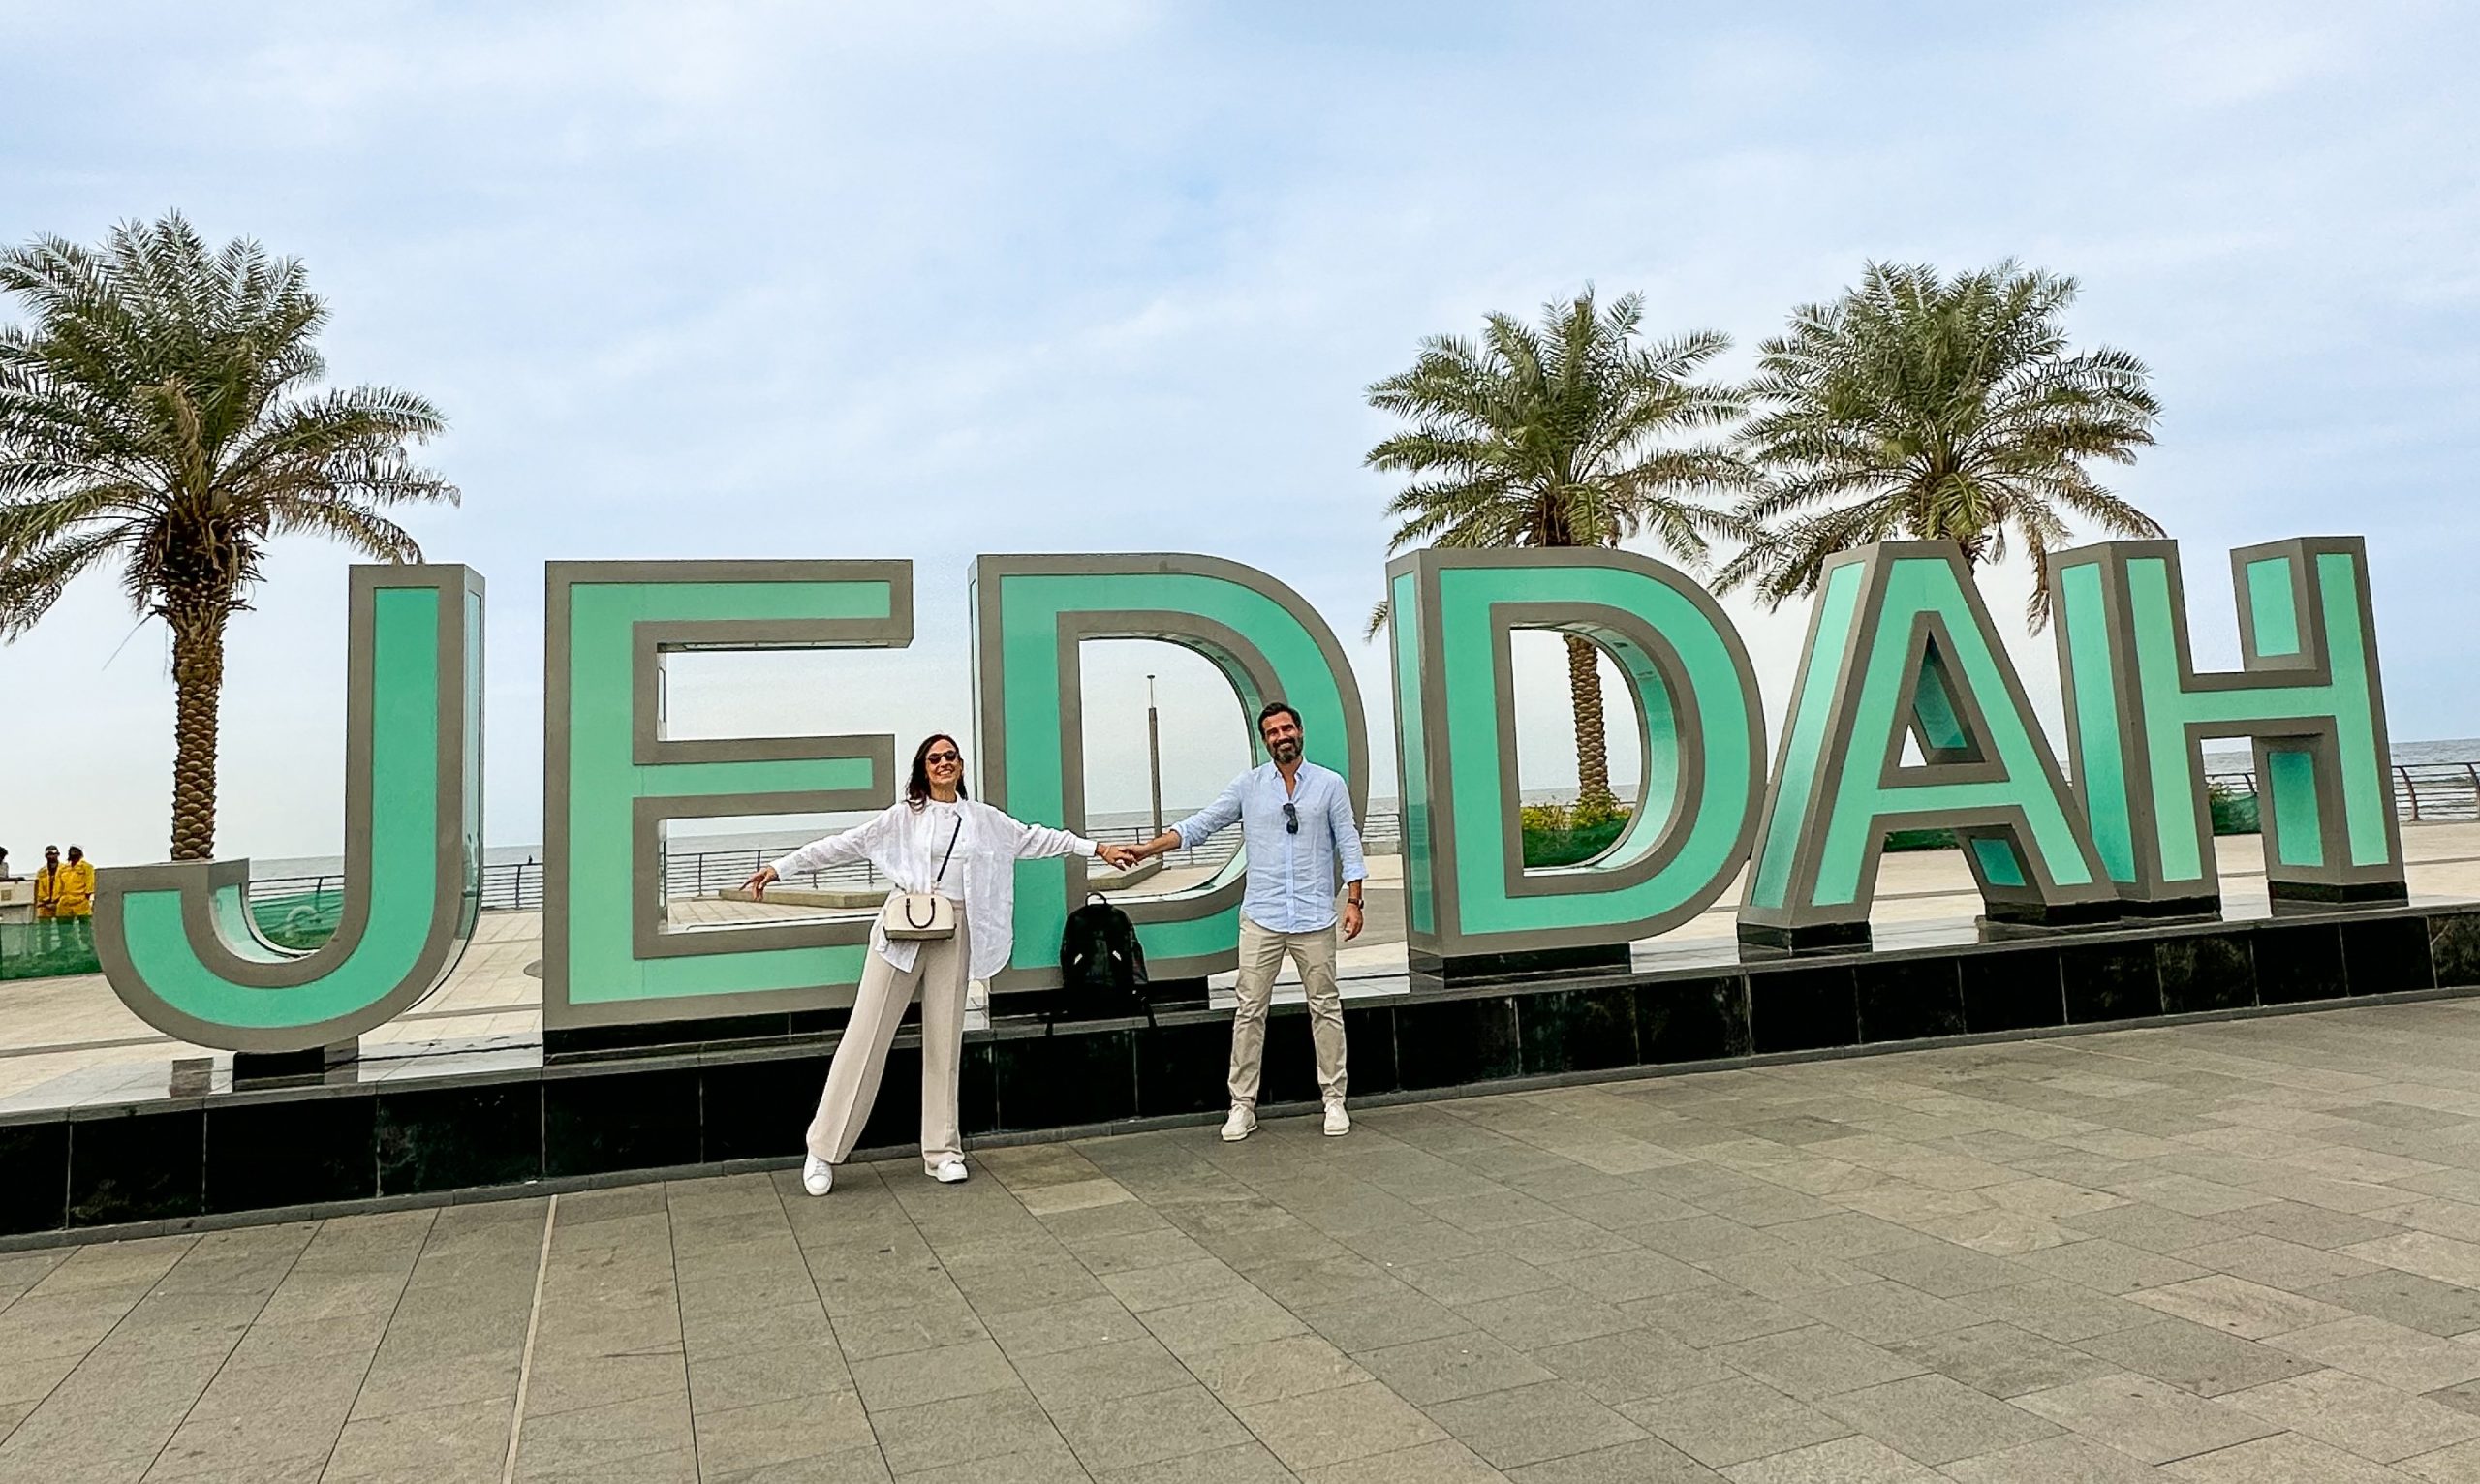 Excursión a Jeddah con MSC Splendida